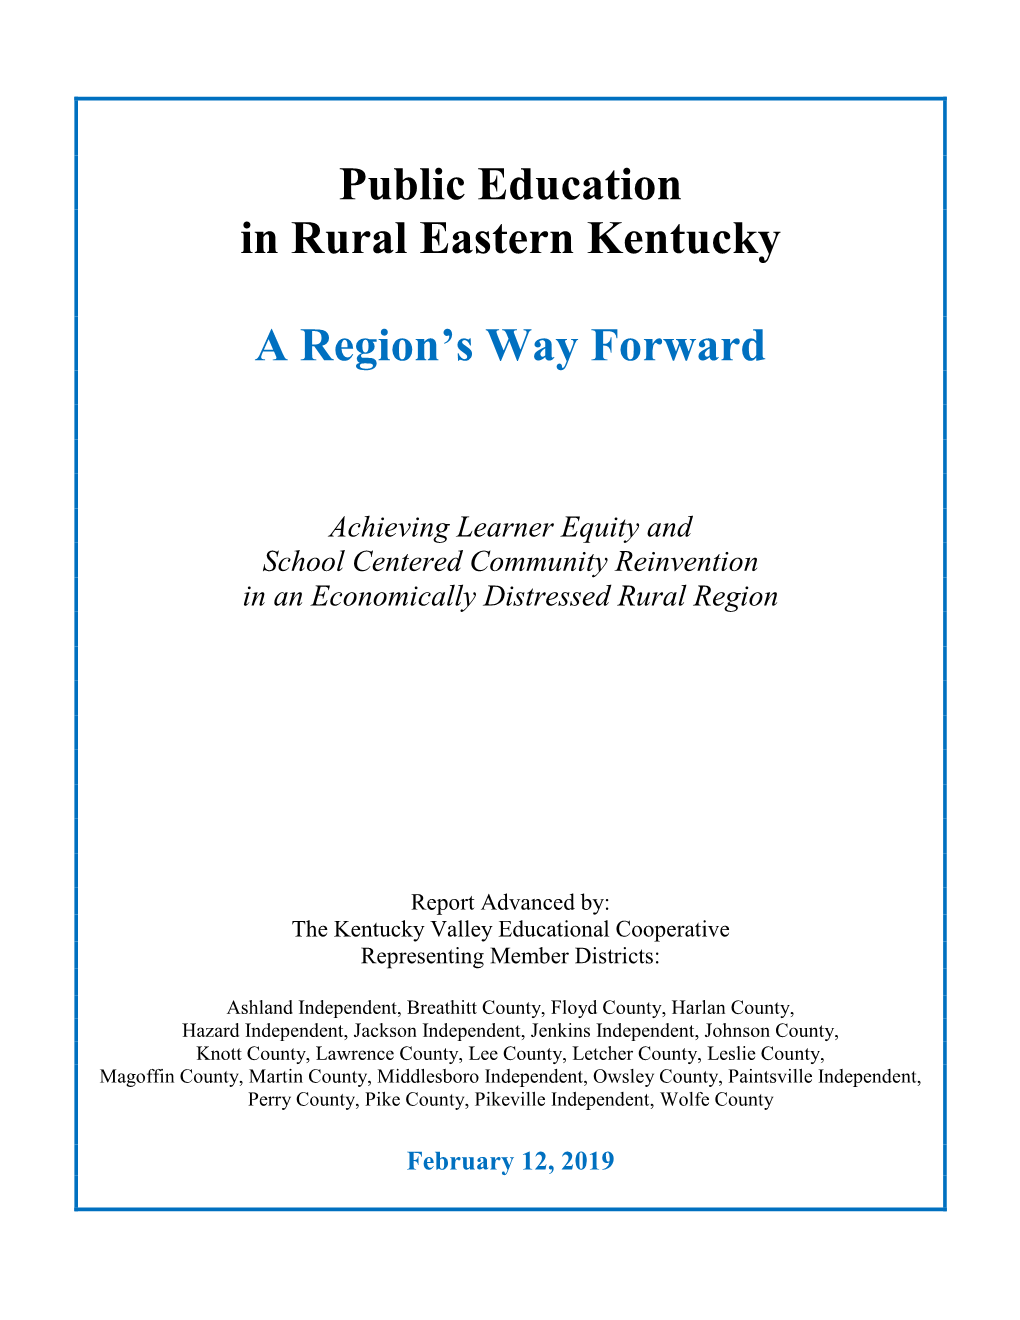 Public Education in Rural Eastern Kentucky a Region's Way Forward